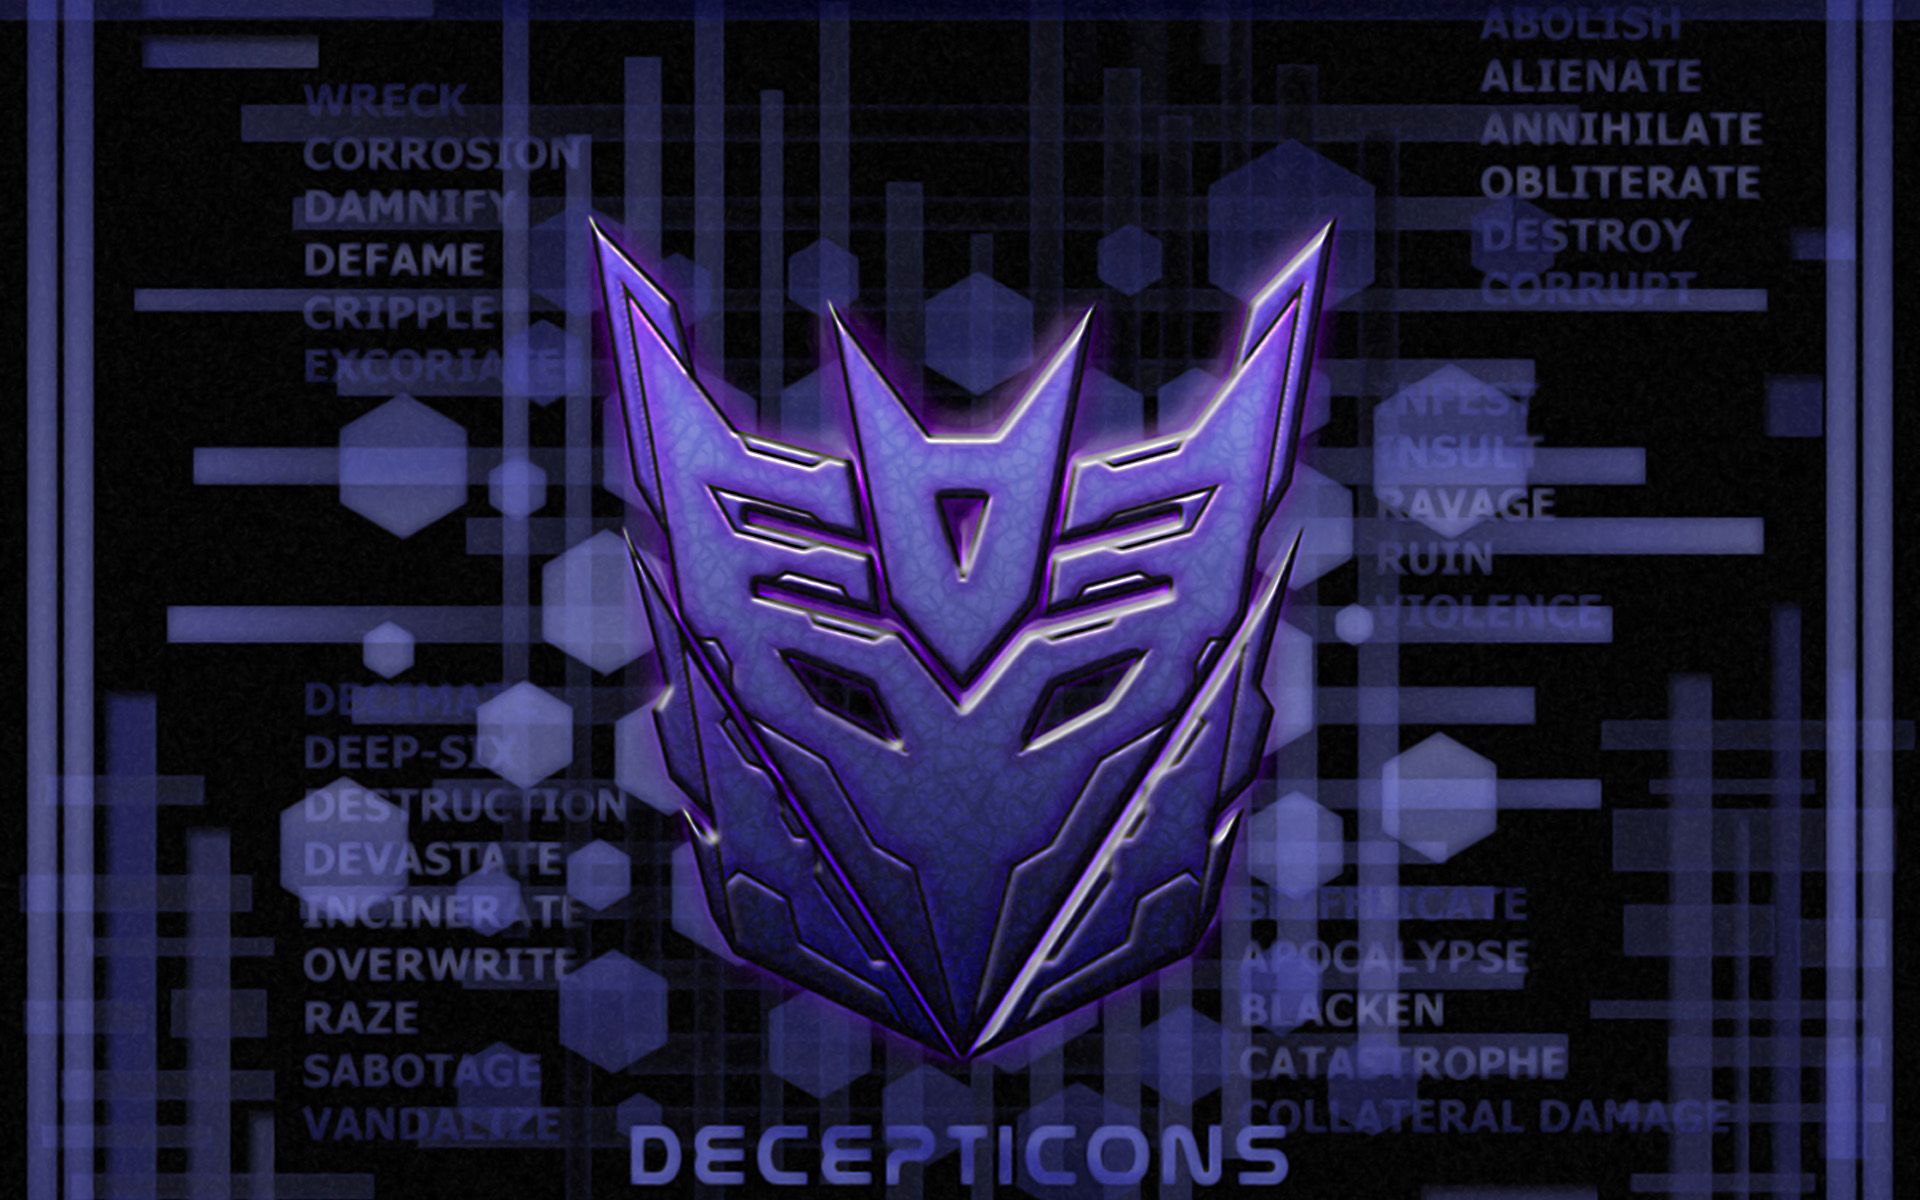 Decepticons Wallpaper. Autobots Vs. Decepticons Wallpaper, Transformer Decepticons Shockwave Wallpaper and Decepticons Wallpaper